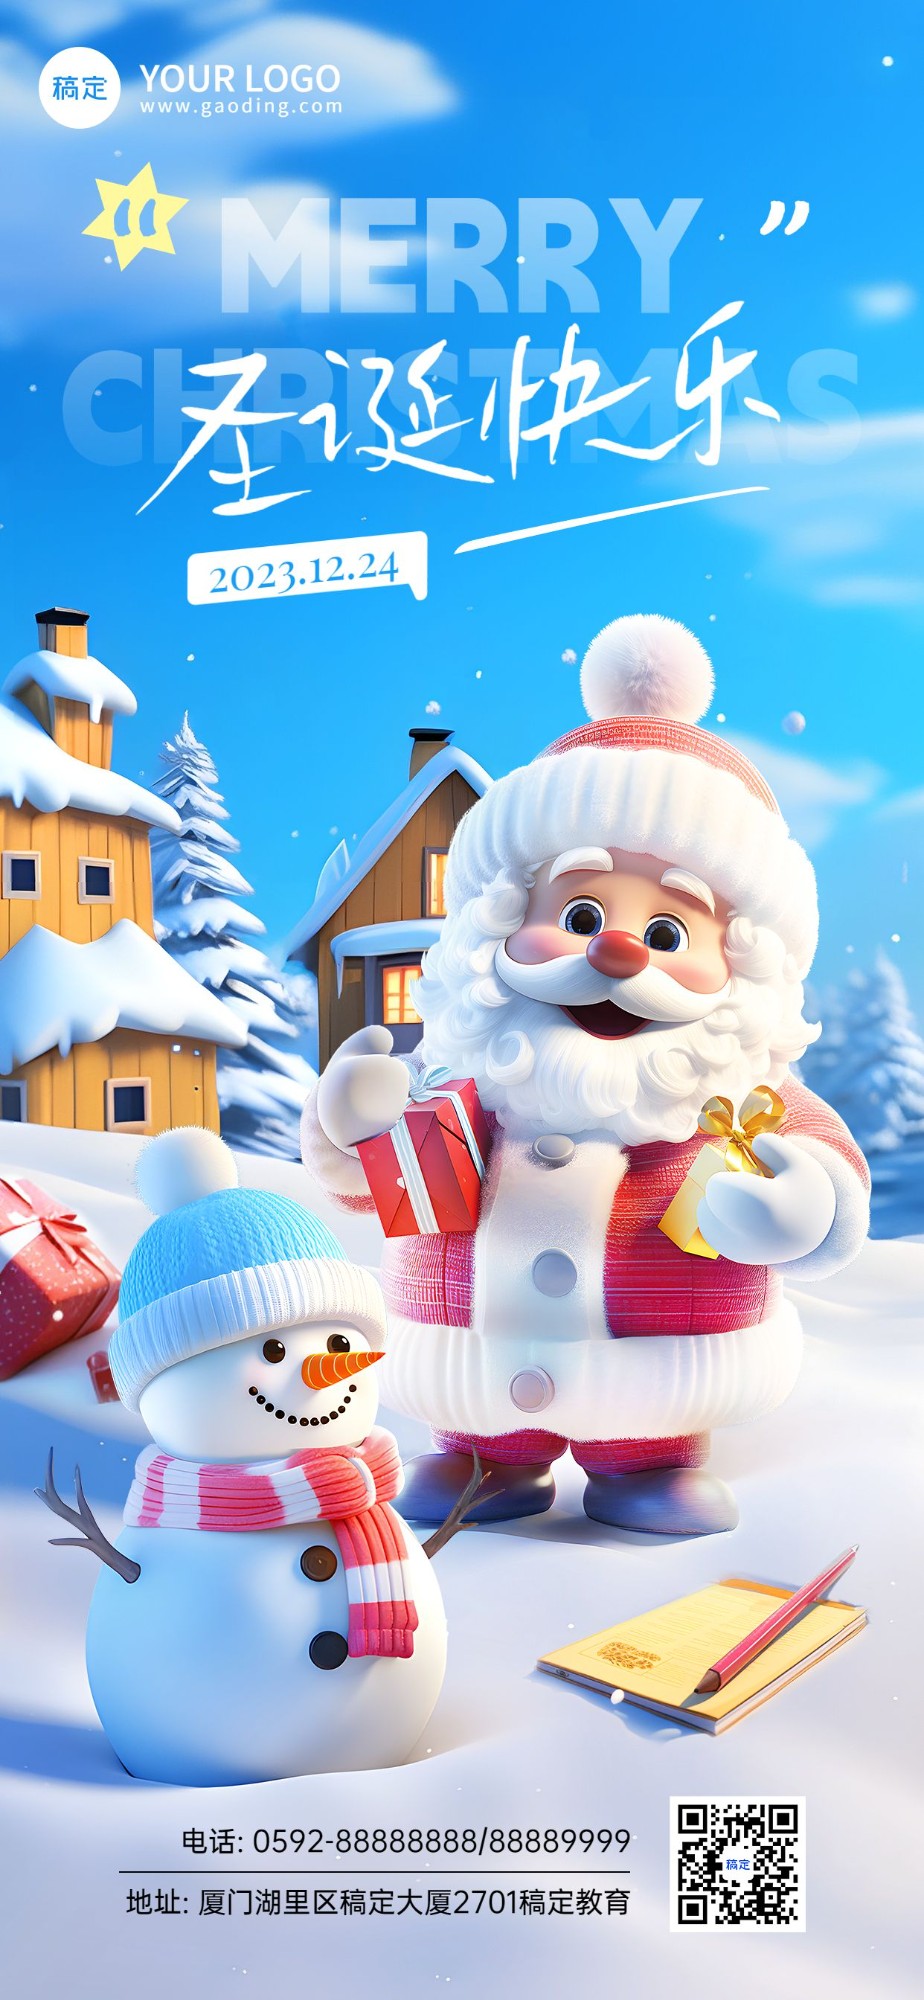 圣诞节教育行业祝福3D毛绒生长手机海报AIGC预览效果